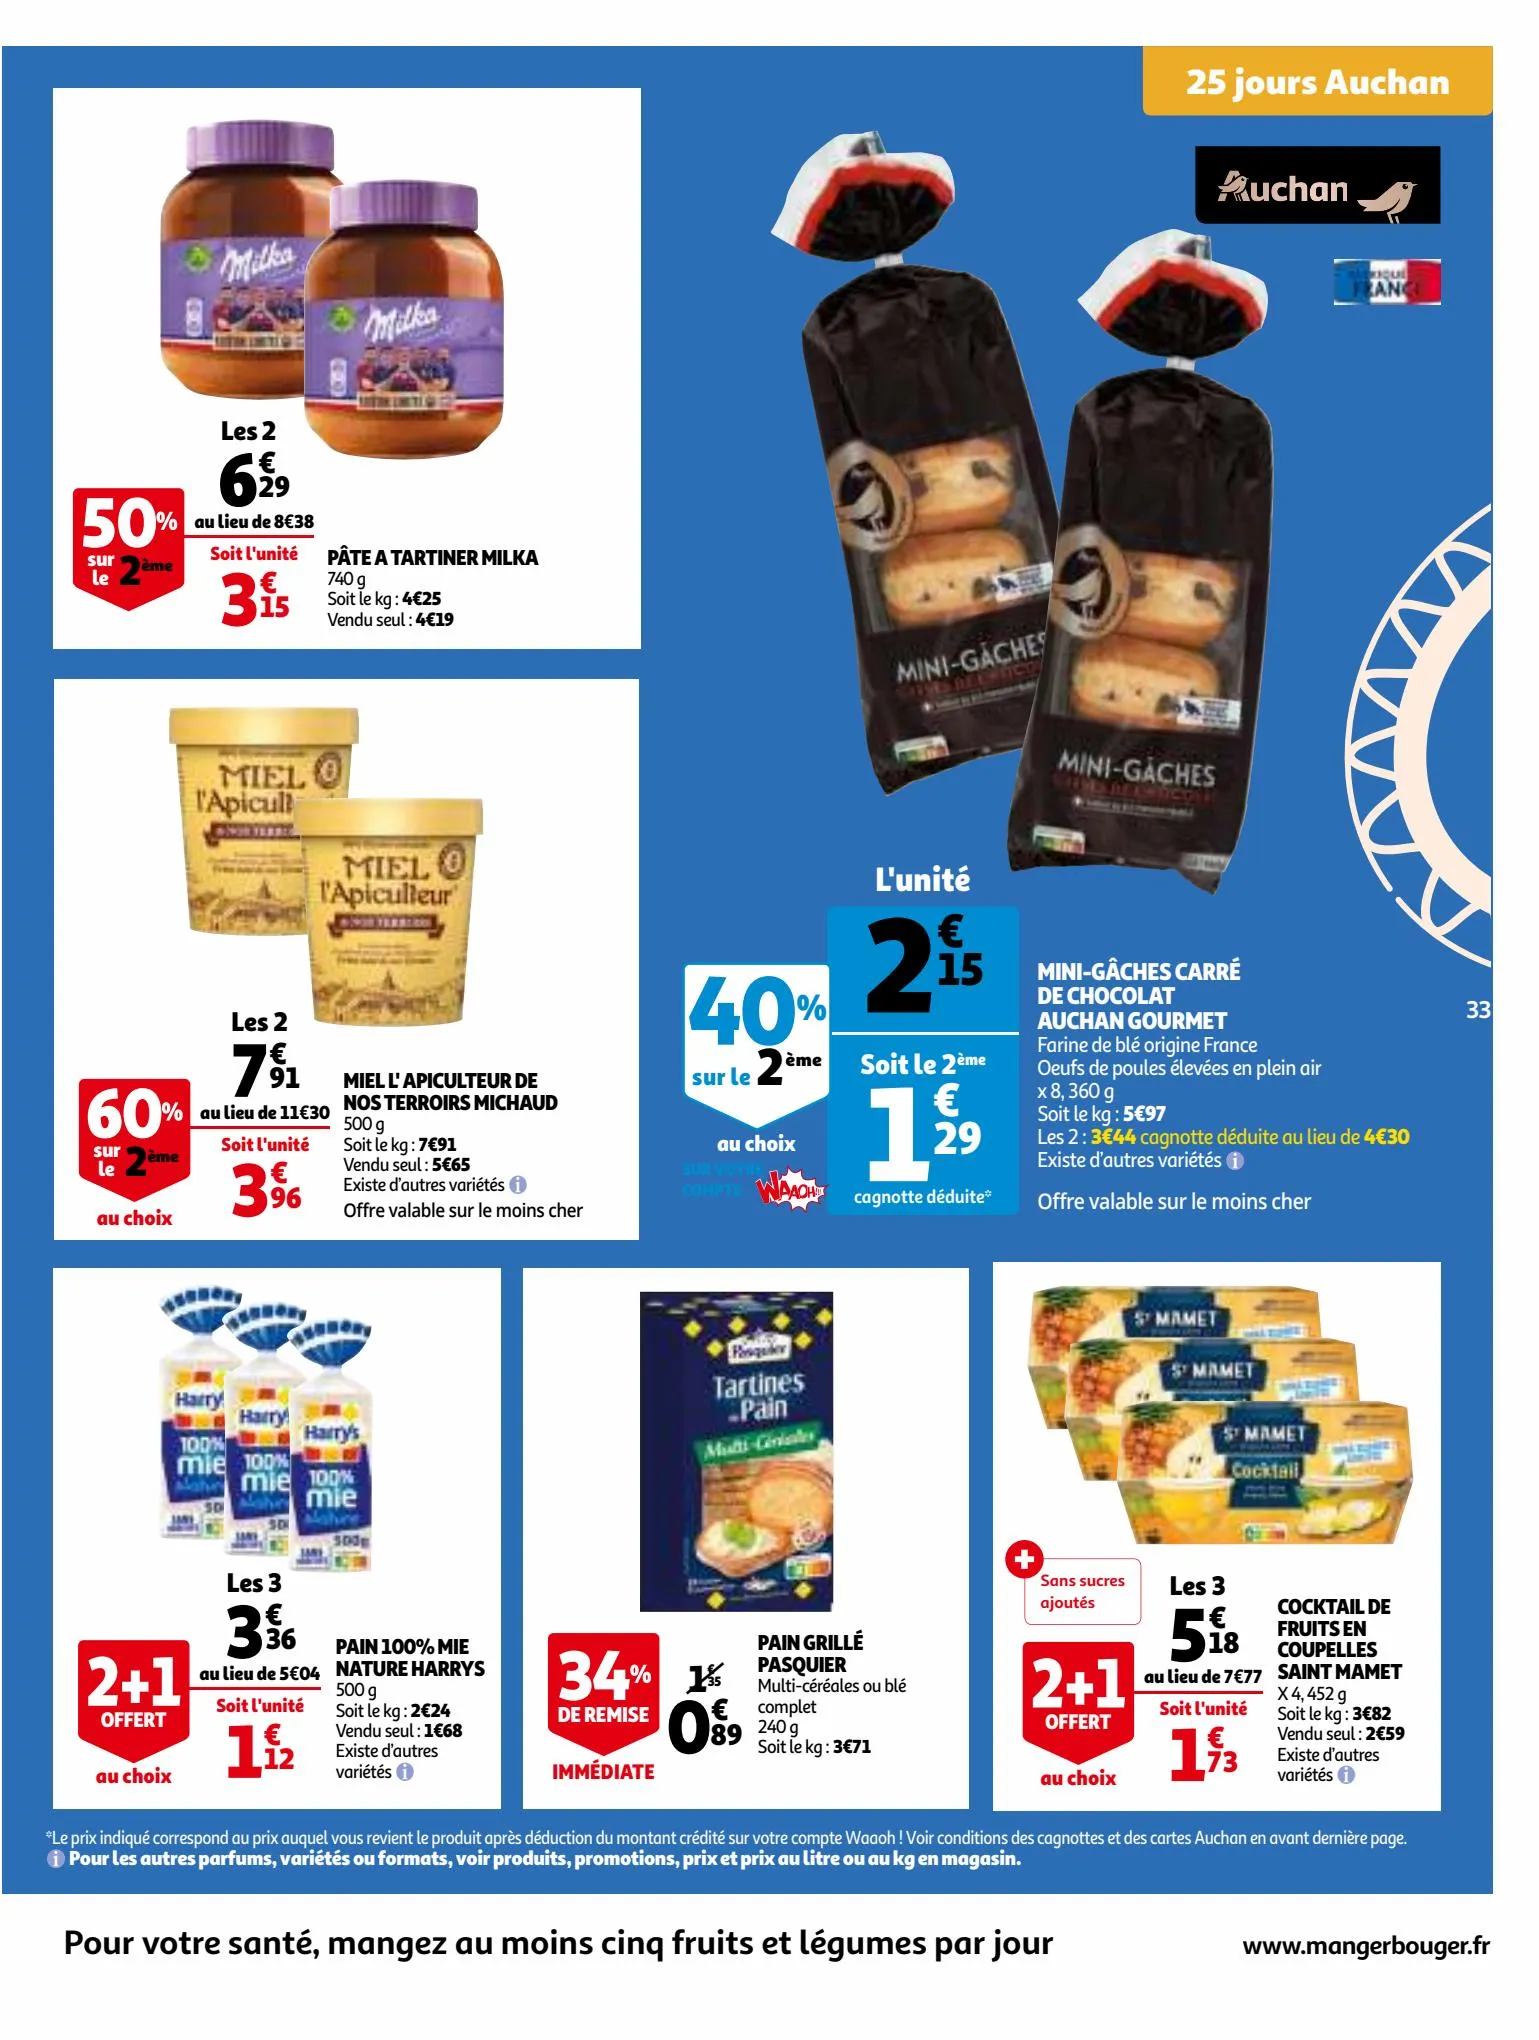 Catalogue 25 Jours Auchan, page 00033